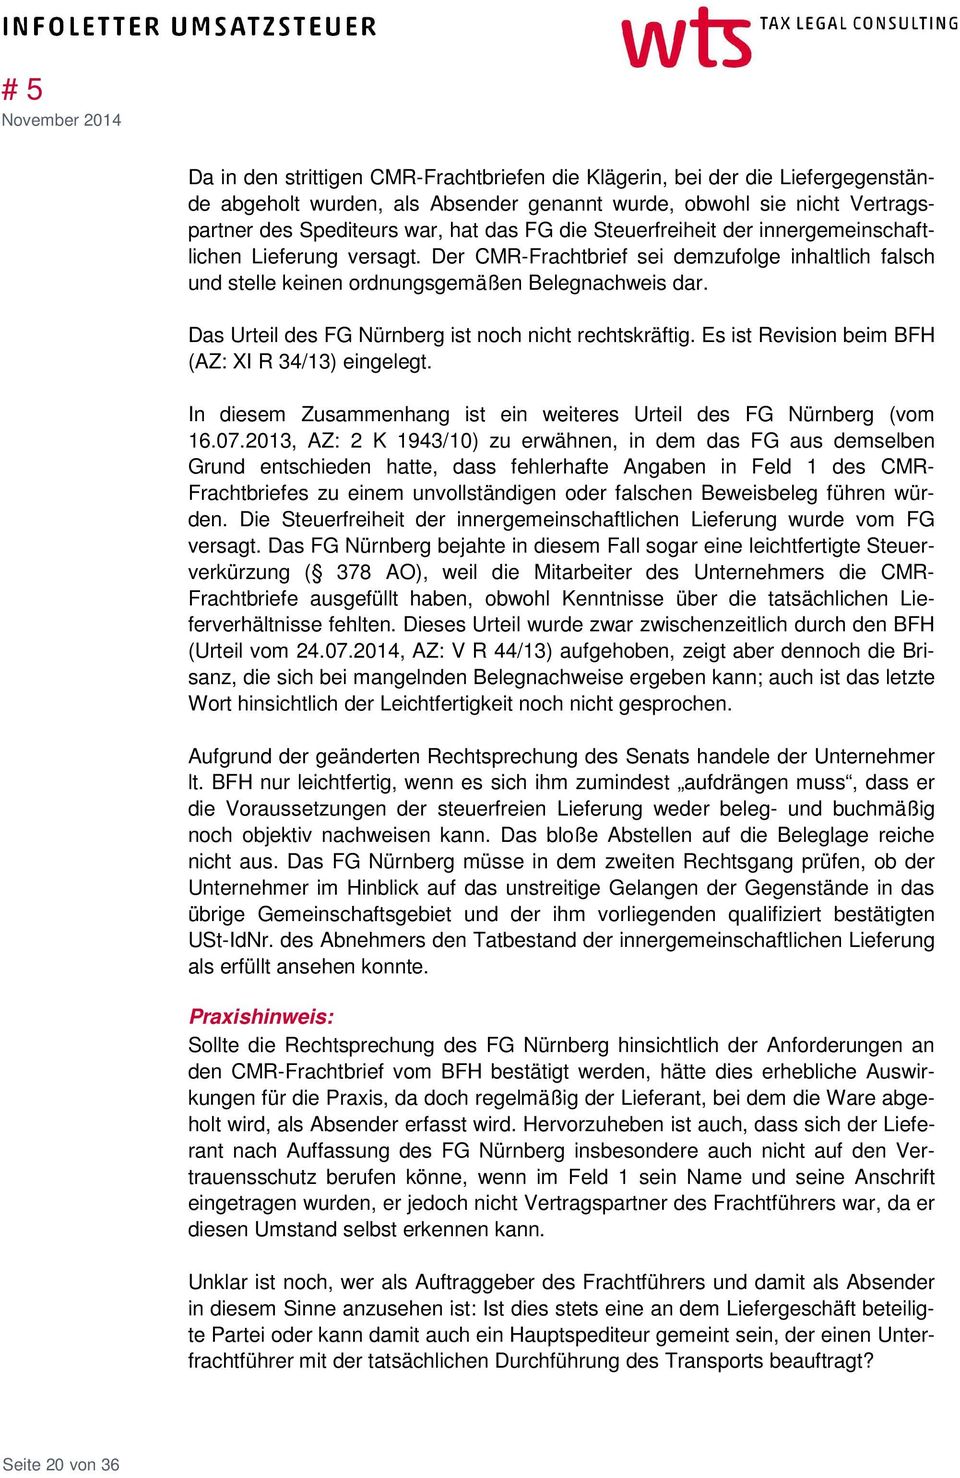 Das Urteil des FG Nürnberg ist noch nicht rechtskräftig. Es ist Revision beim BFH (AZ: XI R 34/13) eingelegt. In diesem Zusammenhang ist ein weiteres Urteil des FG Nürnberg (vom 16.07.